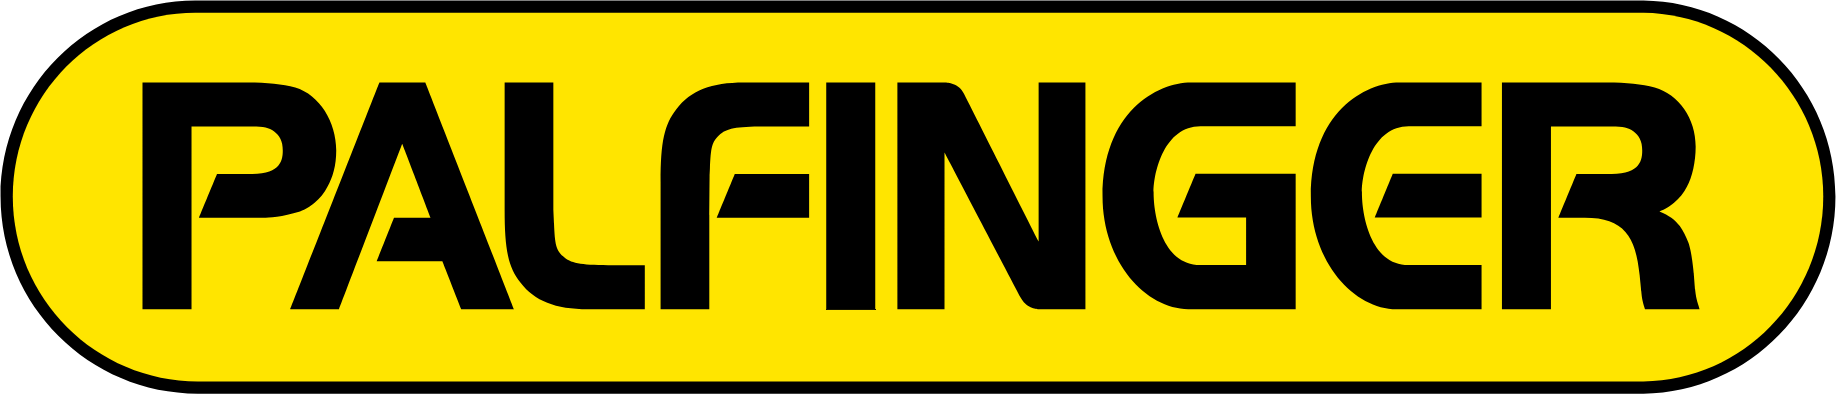 Palfinger logo large (transparent PNG)